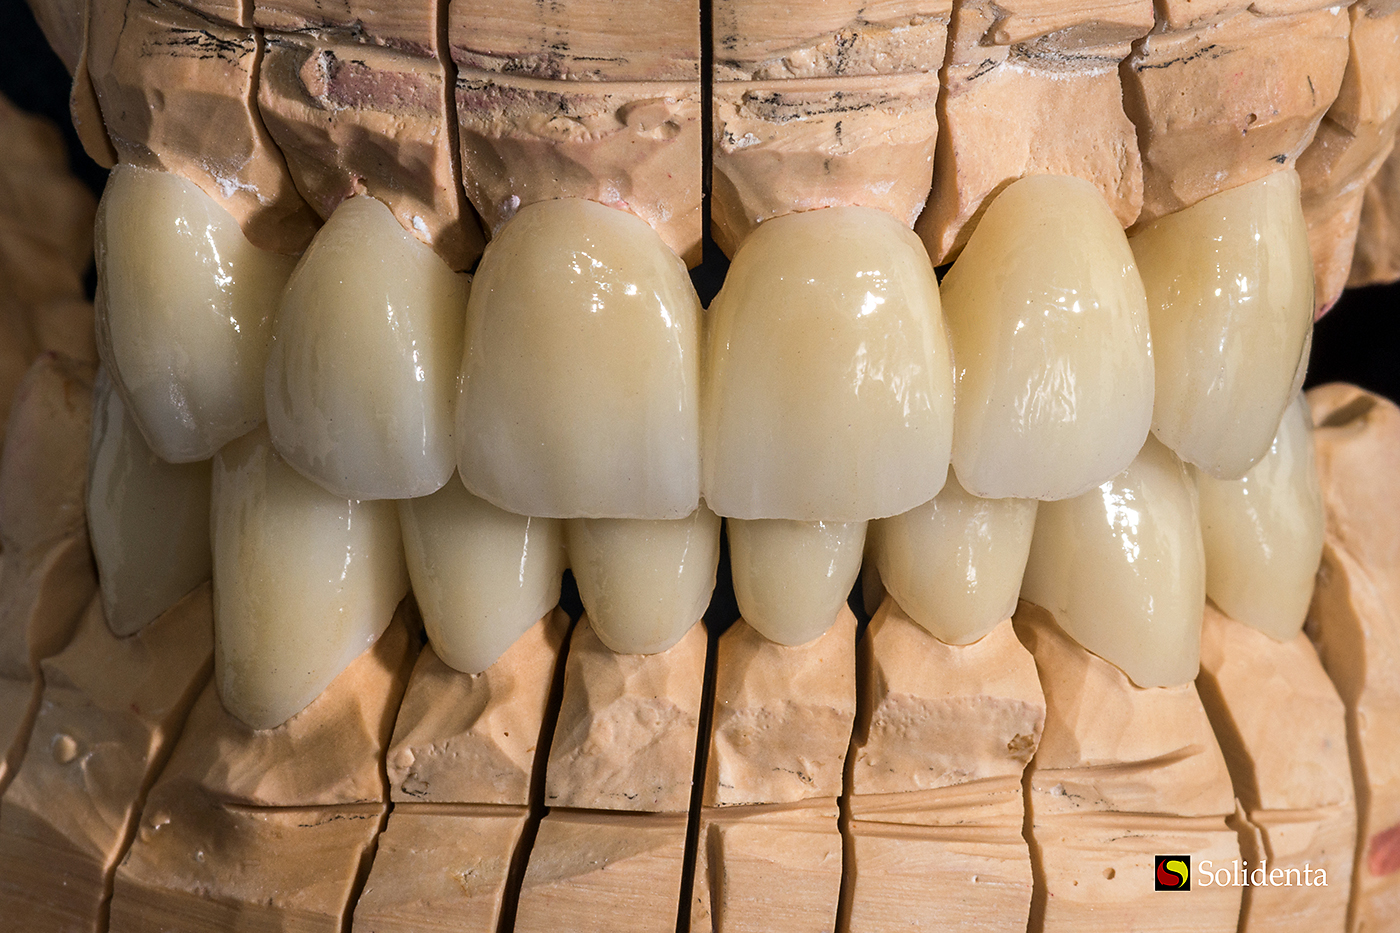 Cirkonio keramikos tiltas, priekiniai dantys, dantų protezų gamyba. Dantų technikas Kristupas Enriušaitis